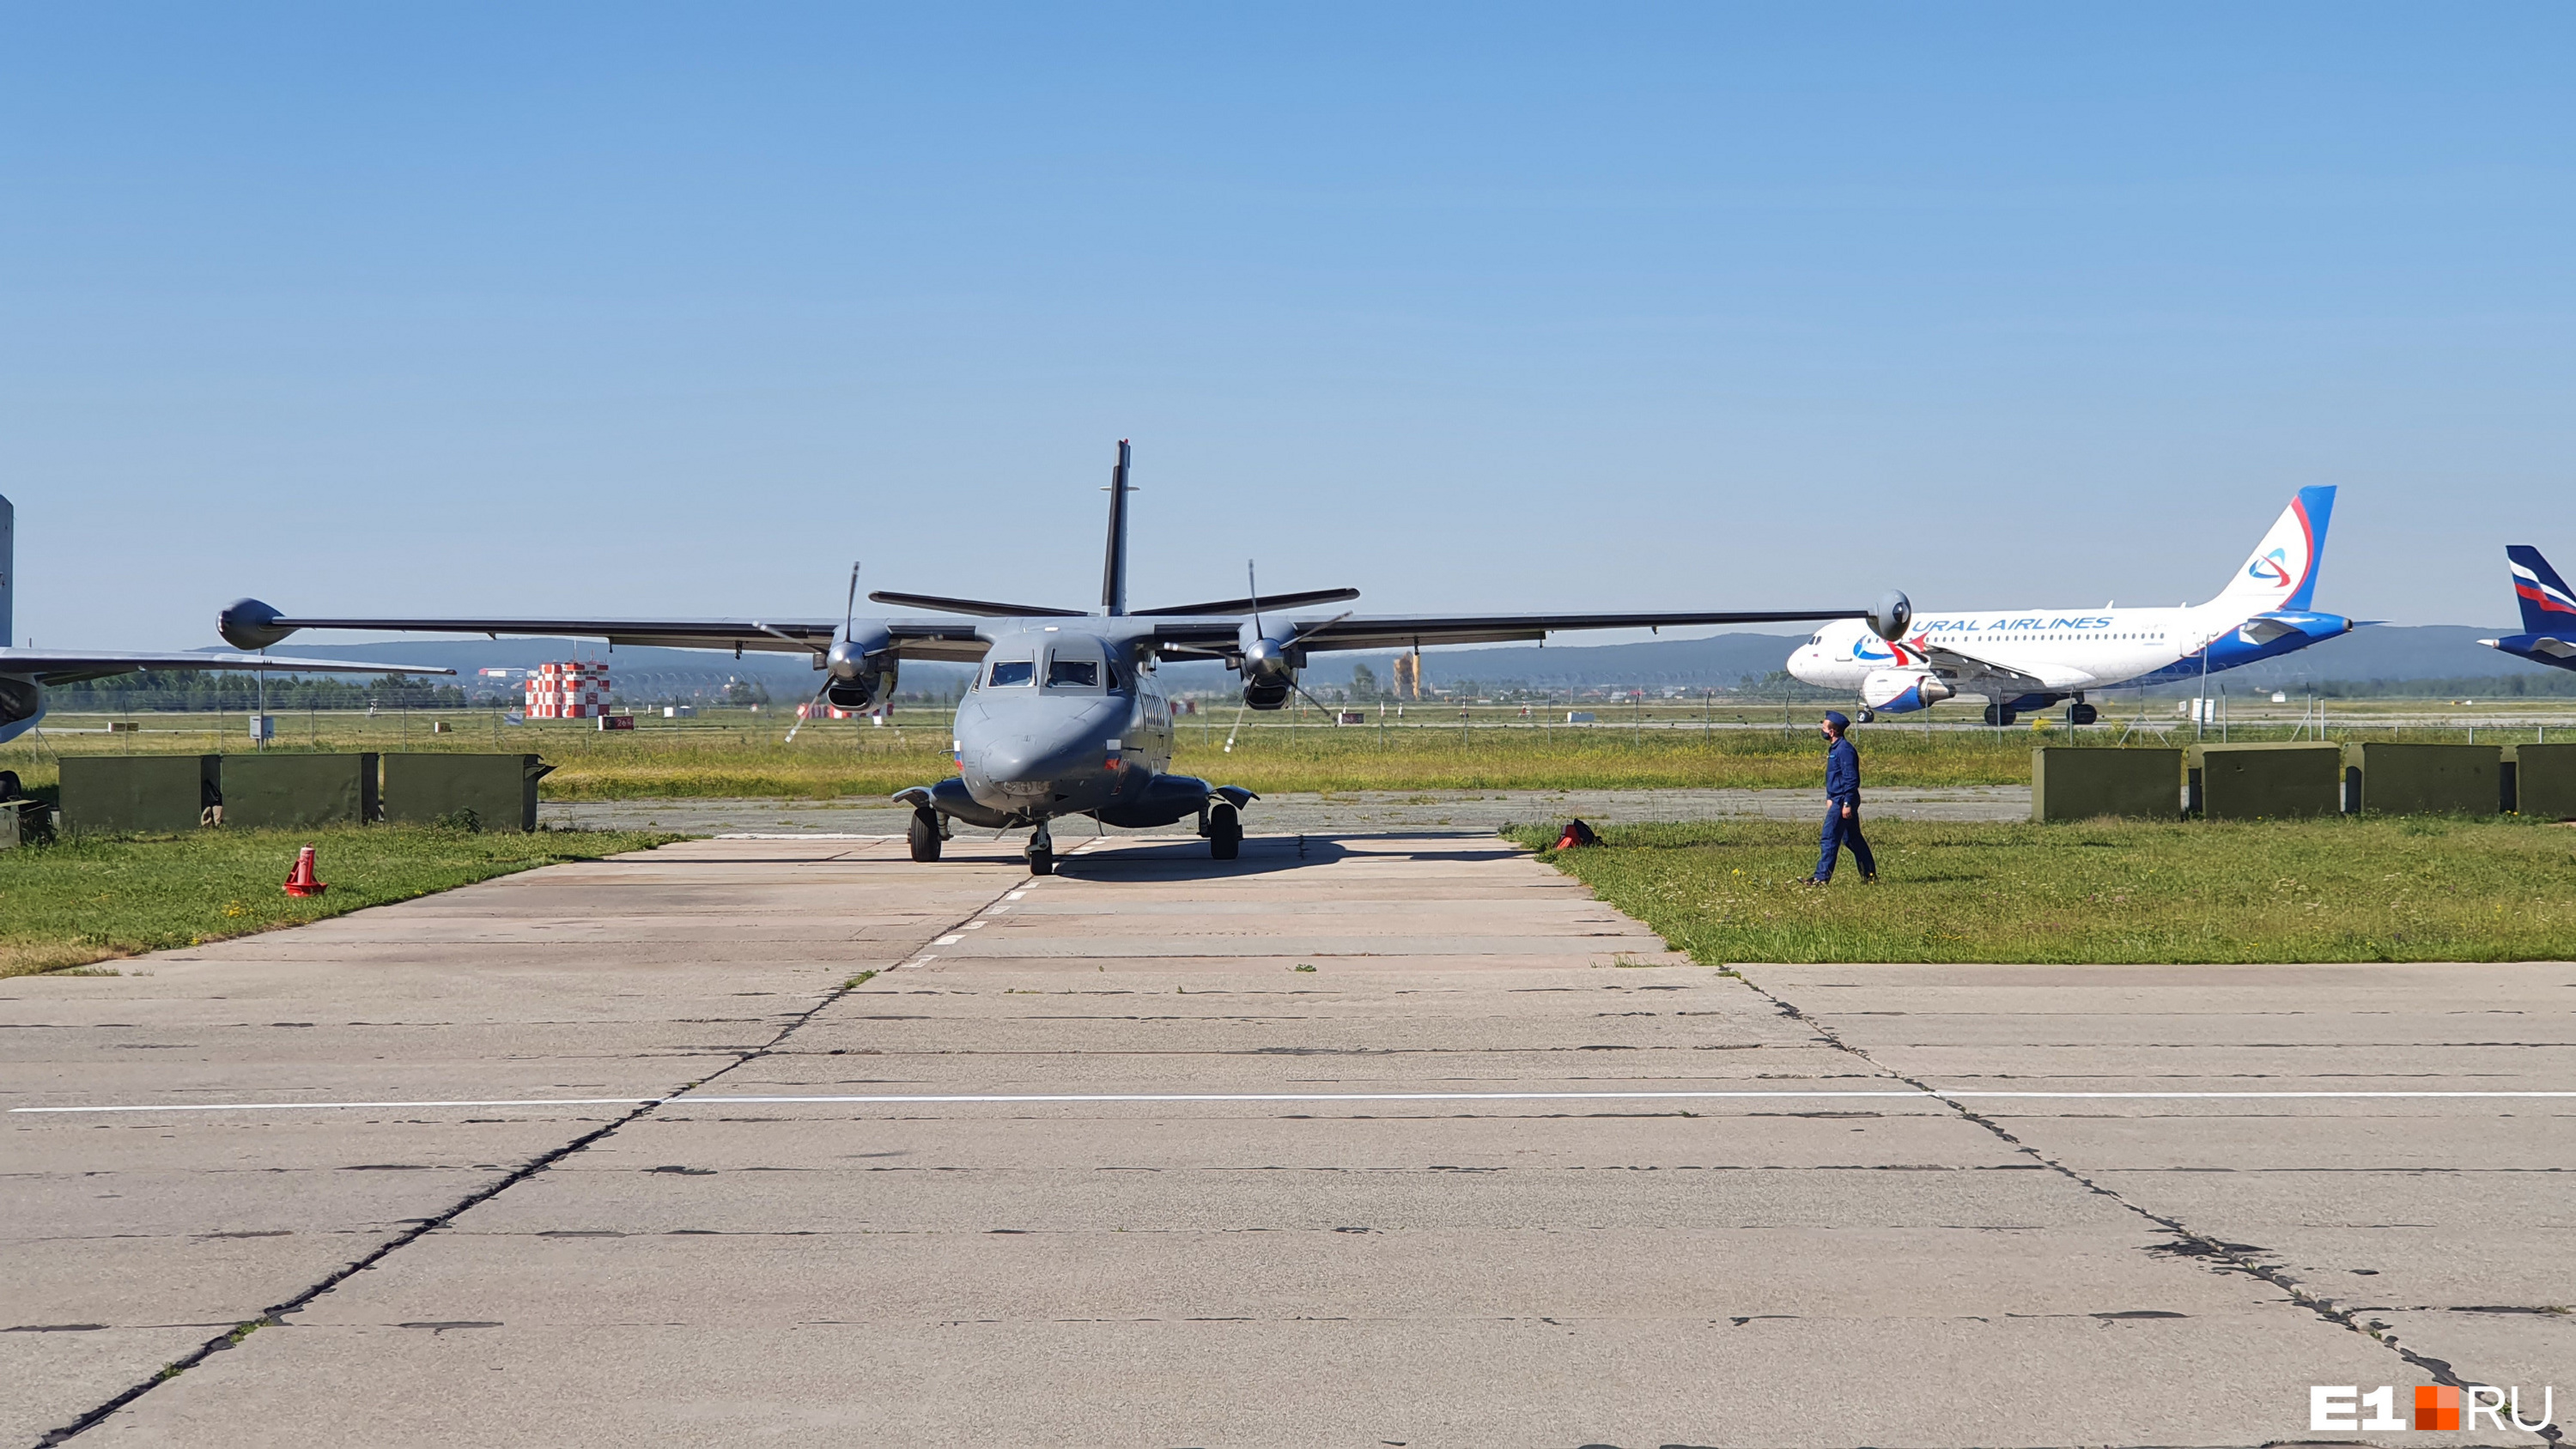 Л-410 — региональный самолет. На таком можно было бы летать в Челябинск или Серов 